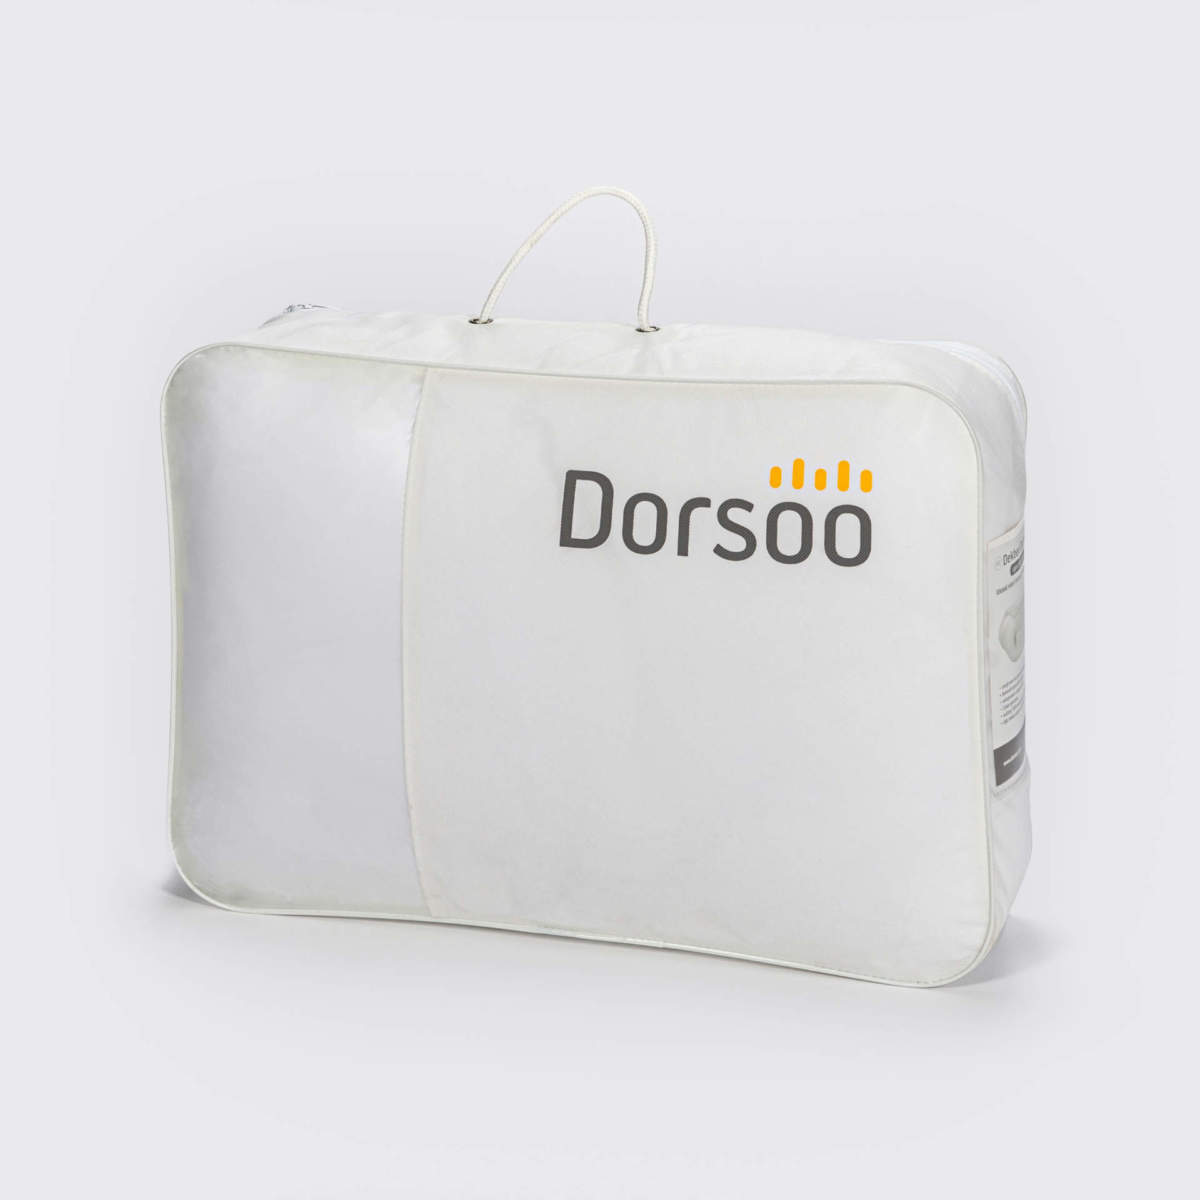 Dorsoo Kameelhaar Zomer online kopen - Dorsoo Shop